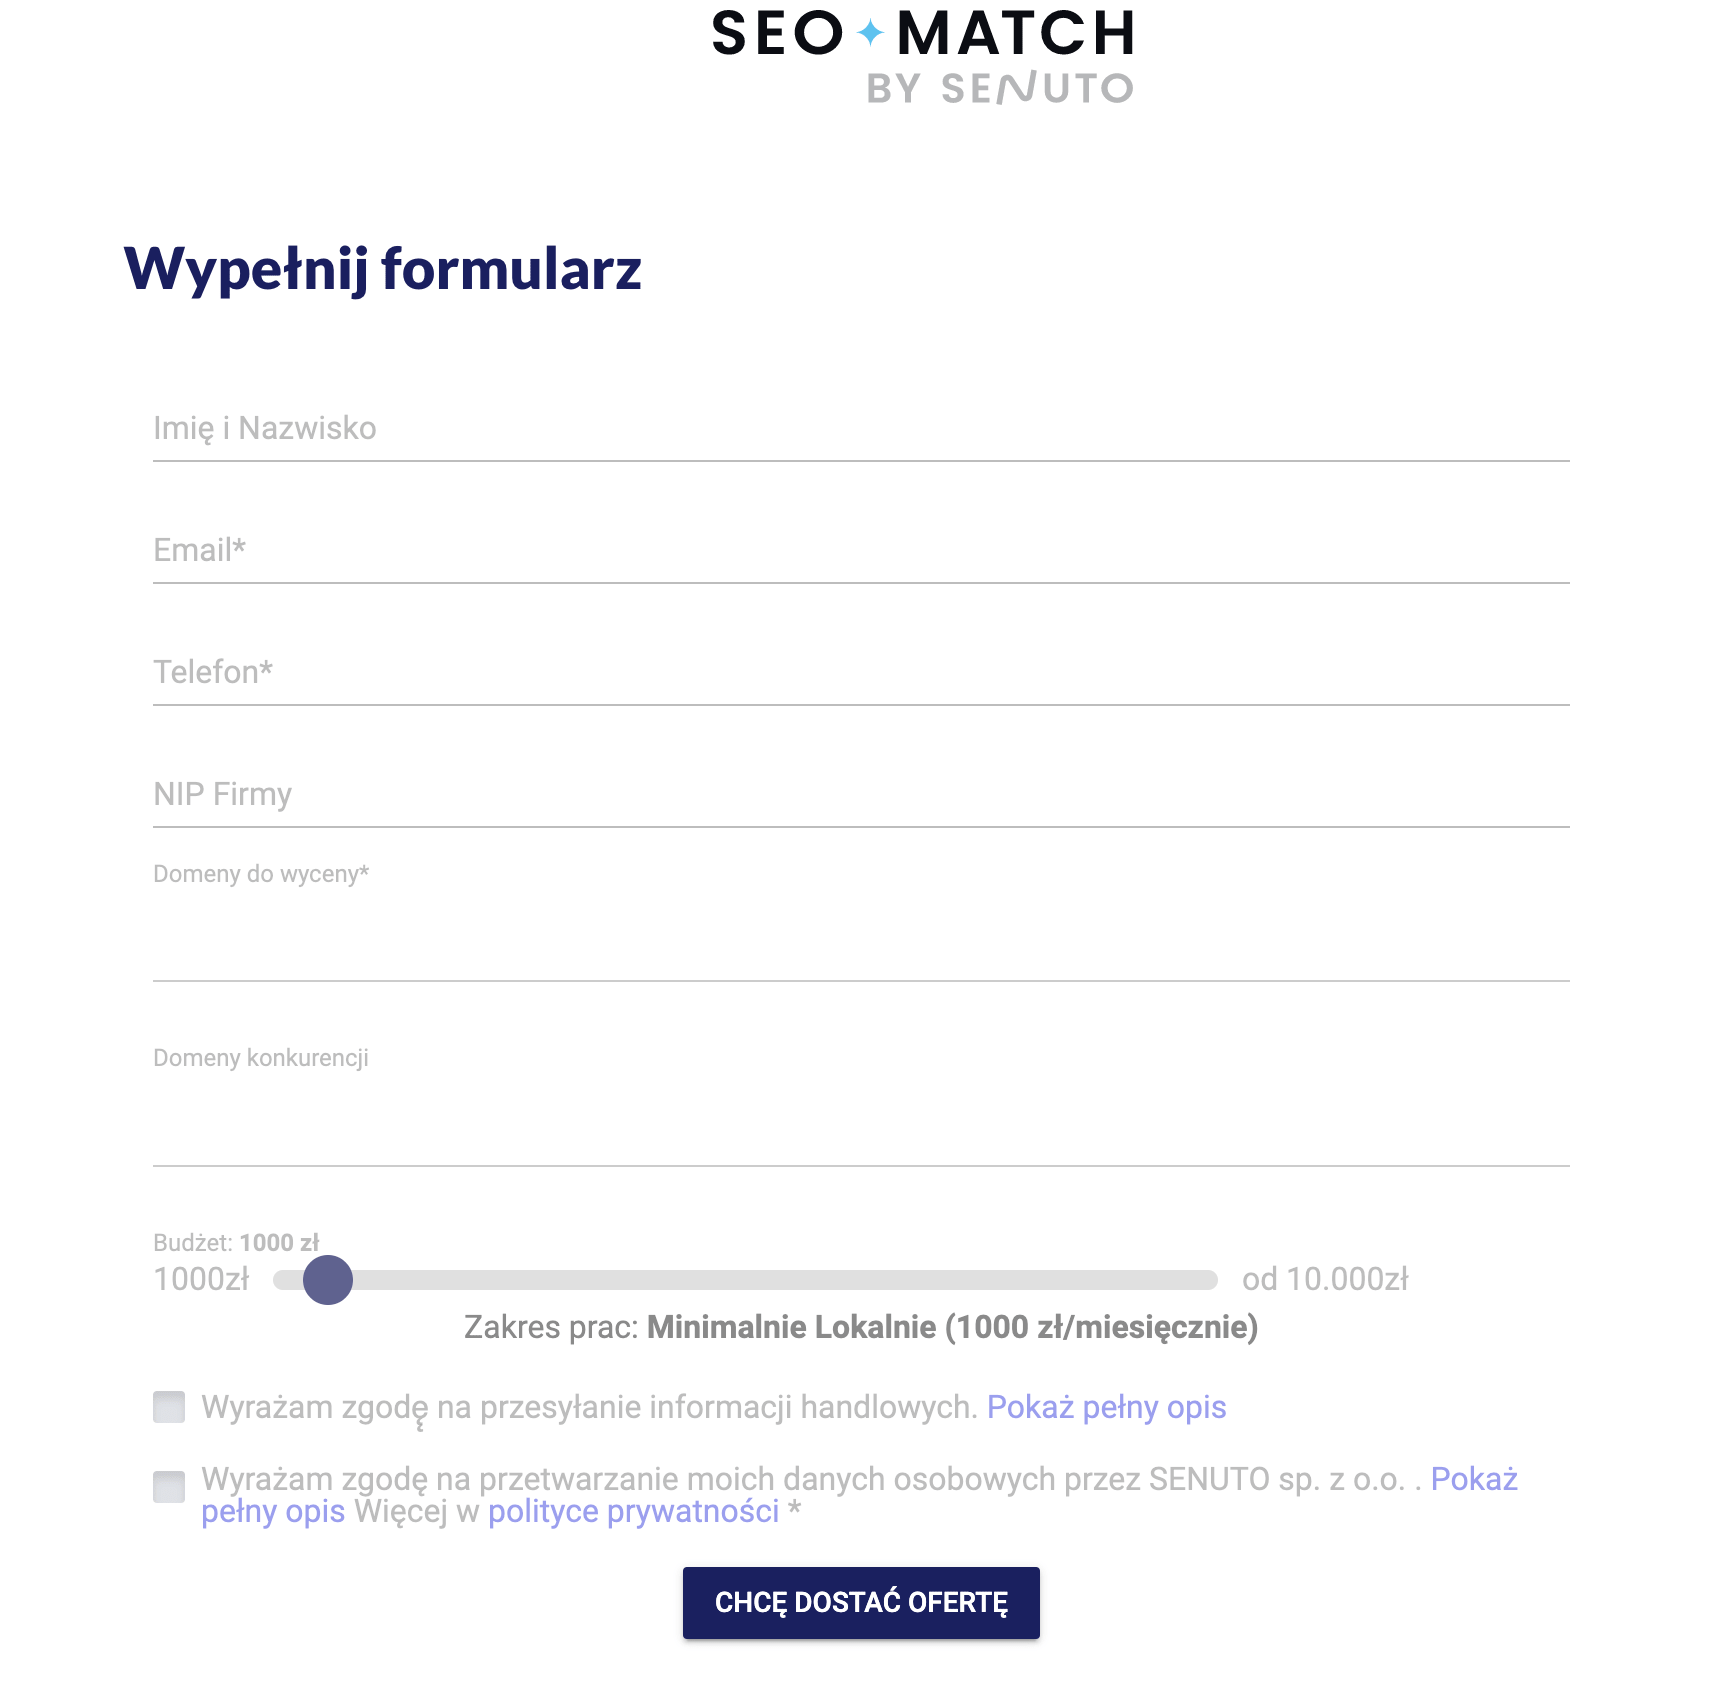 Seo Match - wypełnij formularz. Algorytm dobierze 3 agencje SEO